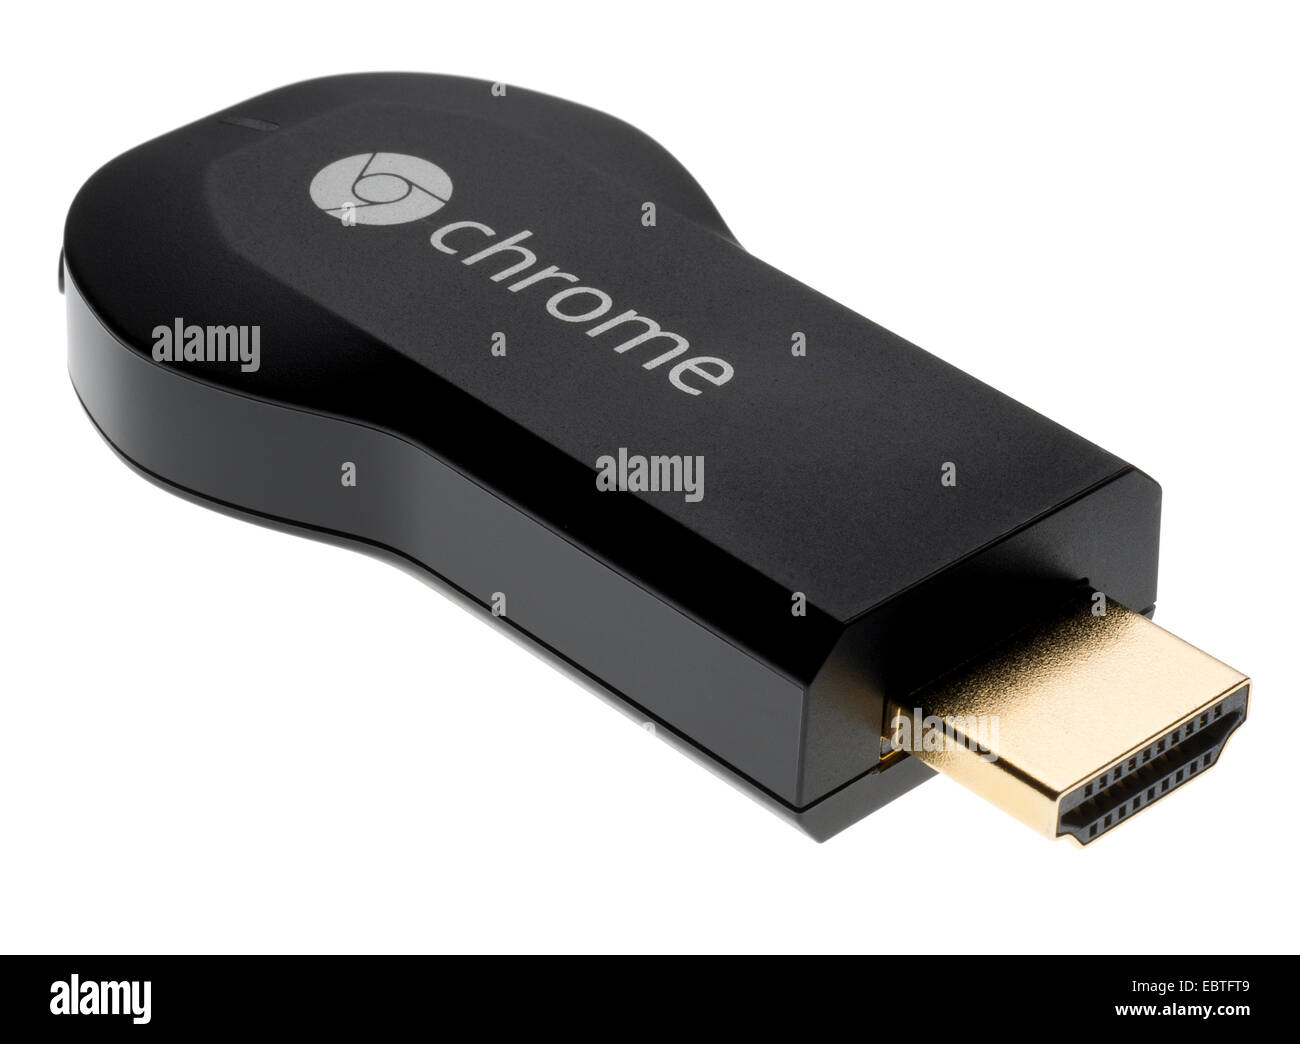 Google Chromecast media streaming dispositivo che si inserisce nella porta HDMI su un televisore HD. Flusso o cast di contenuti sul tuo televisore. Foto Stock